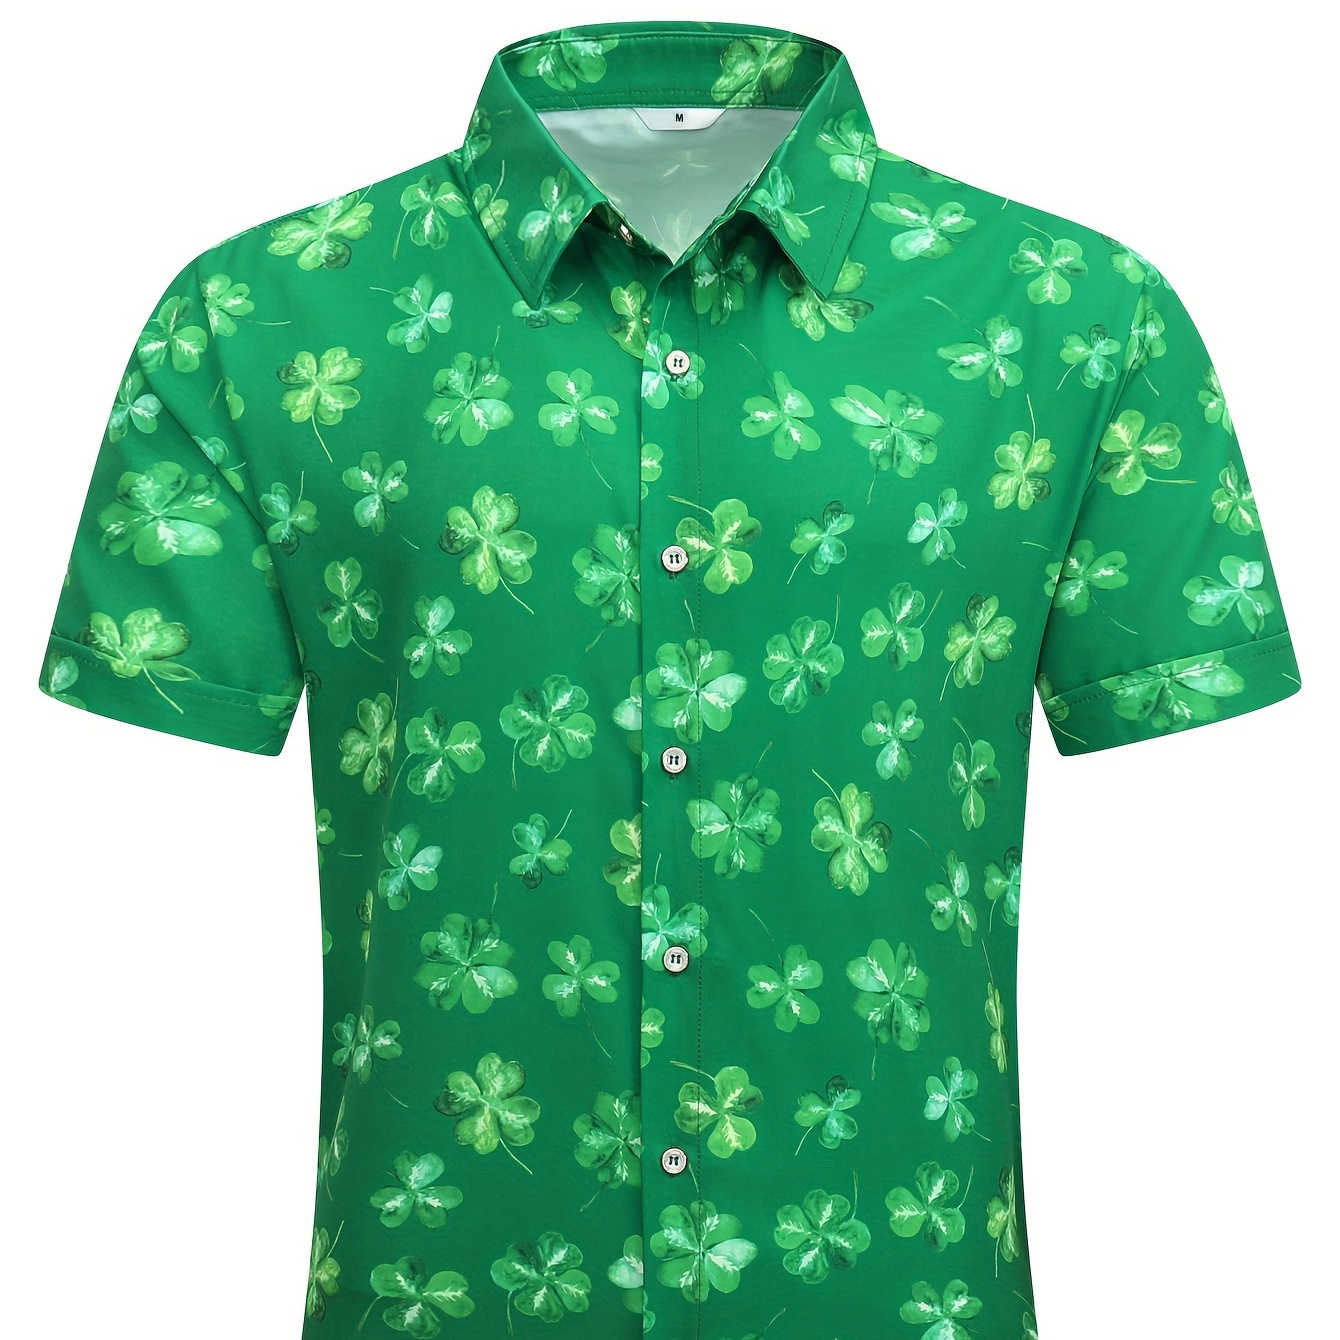 

Clovers Digital Print Men's Short Sleeve Button Up Shirt, Summer Resort Vacation, St. Patrick's Day Men's Shirt